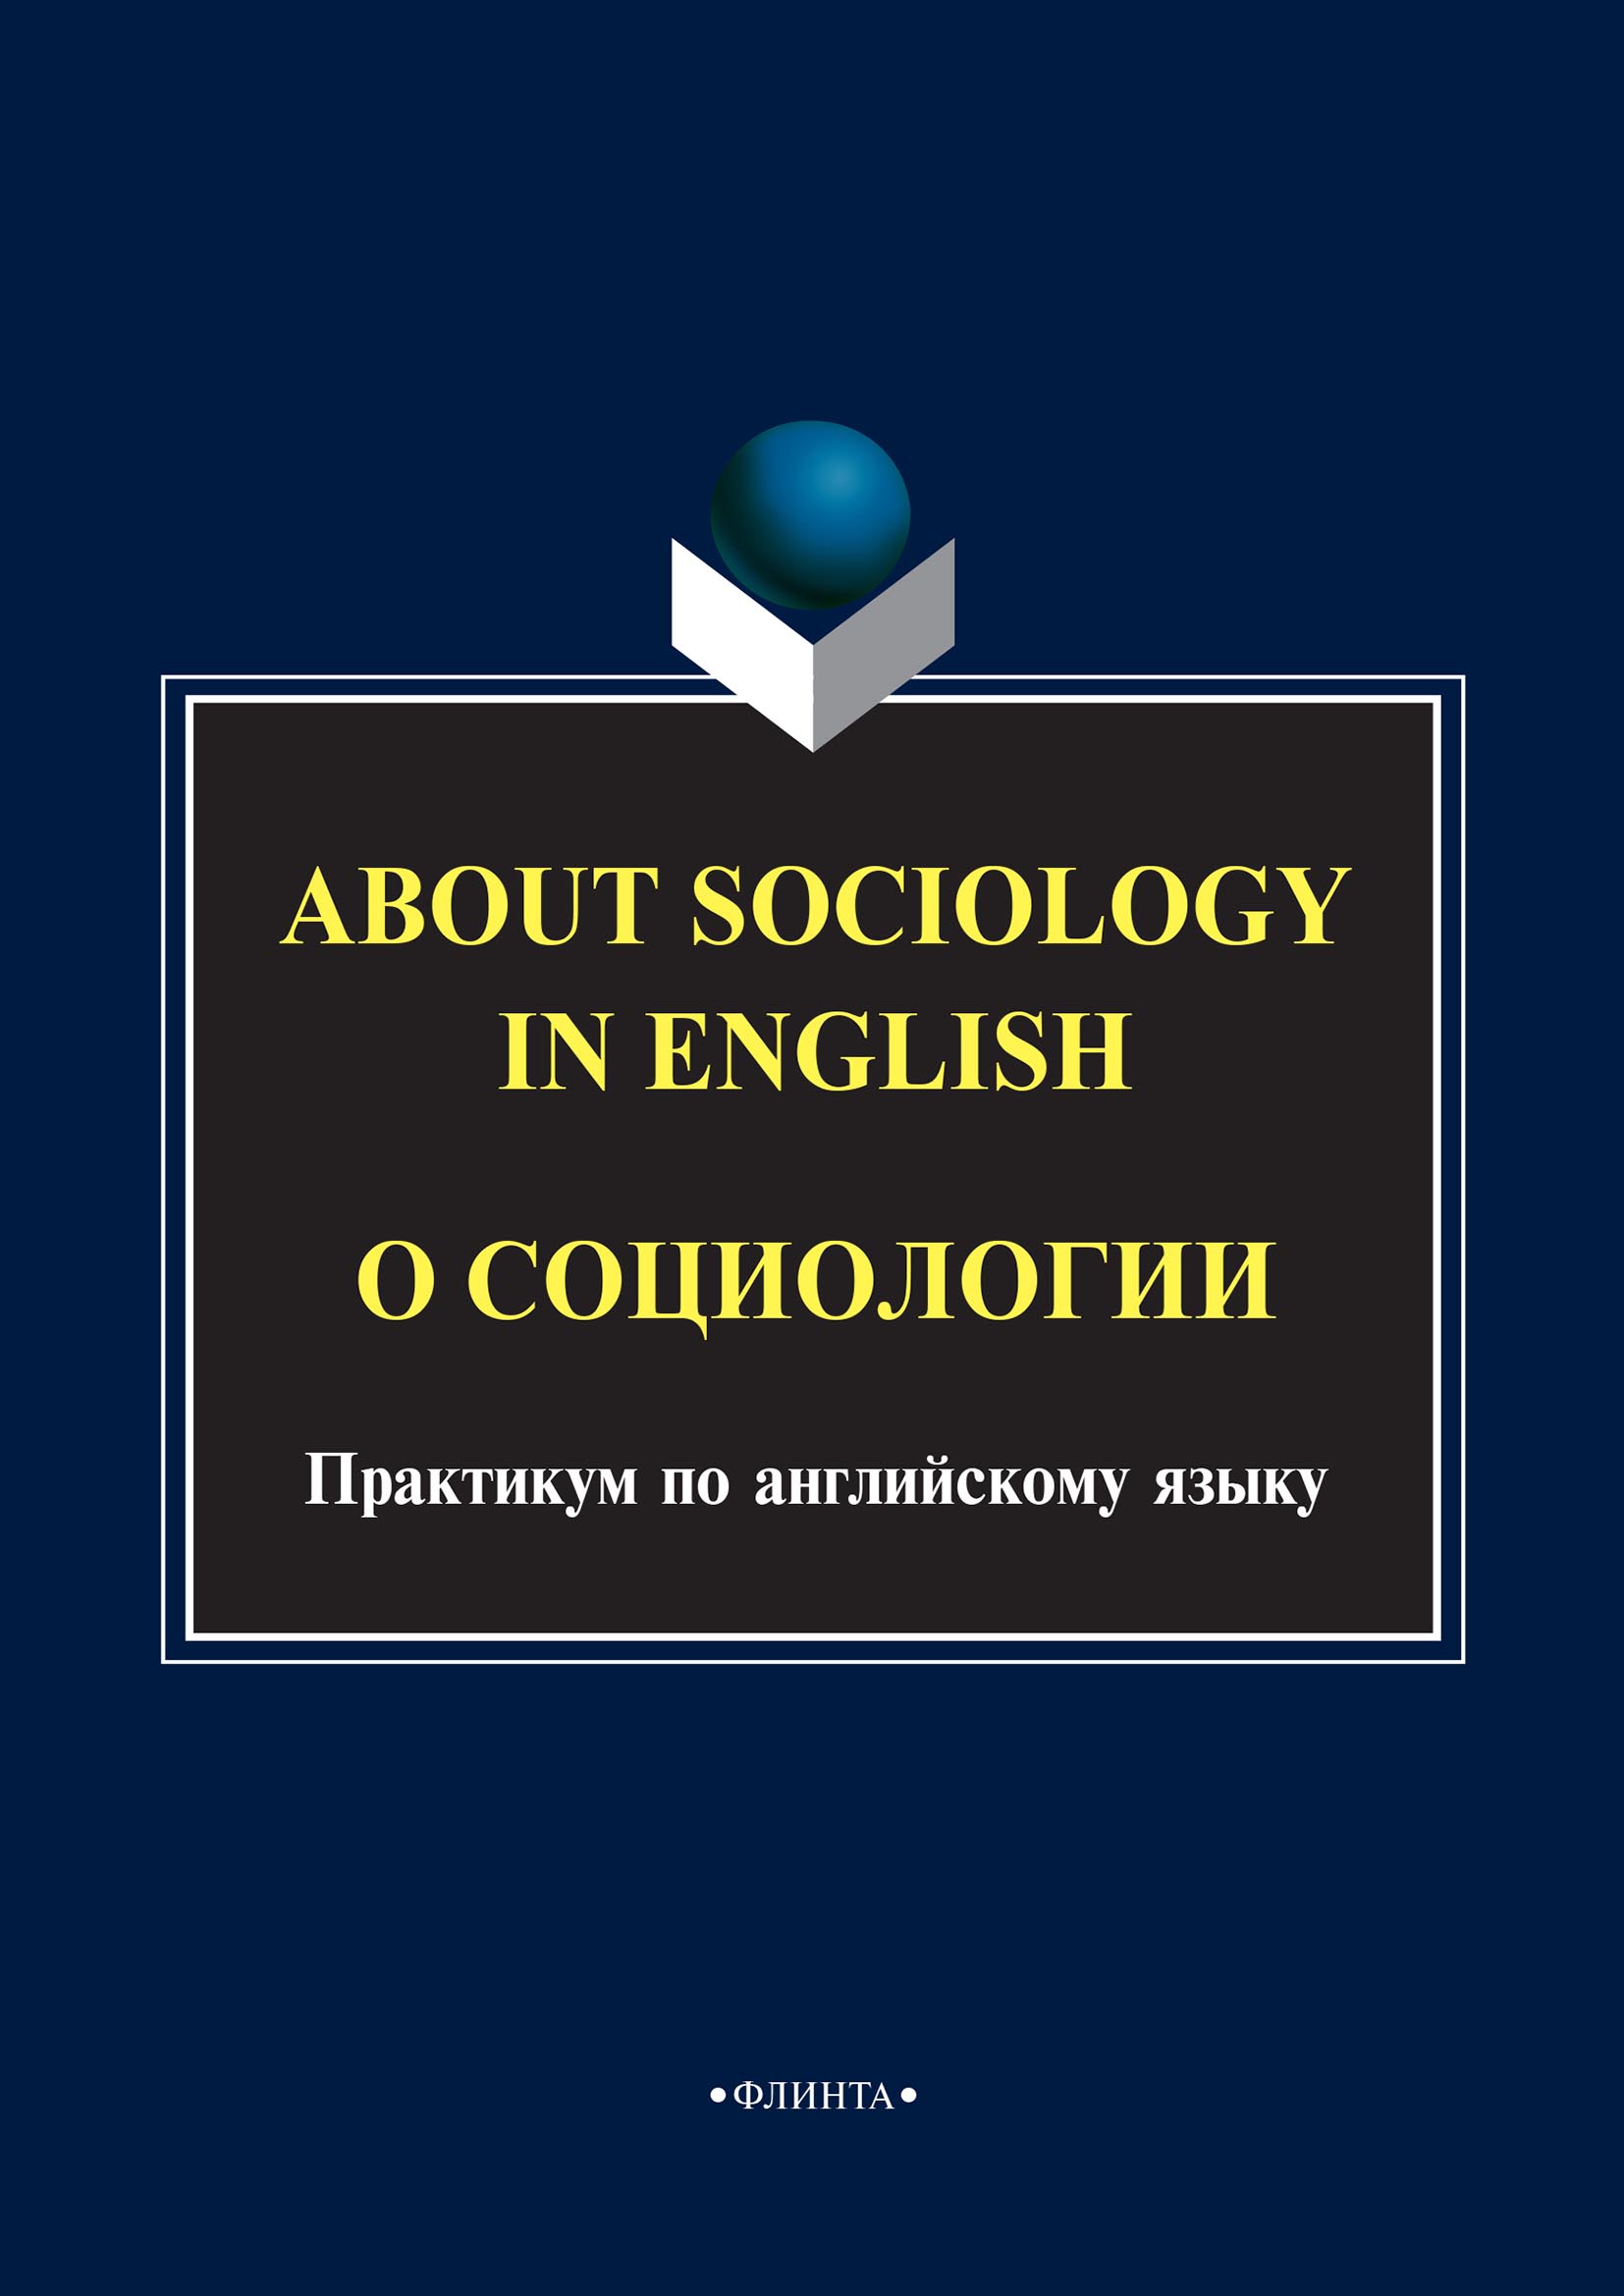 About sociology in english.О социологии. Практикум по английскому языку